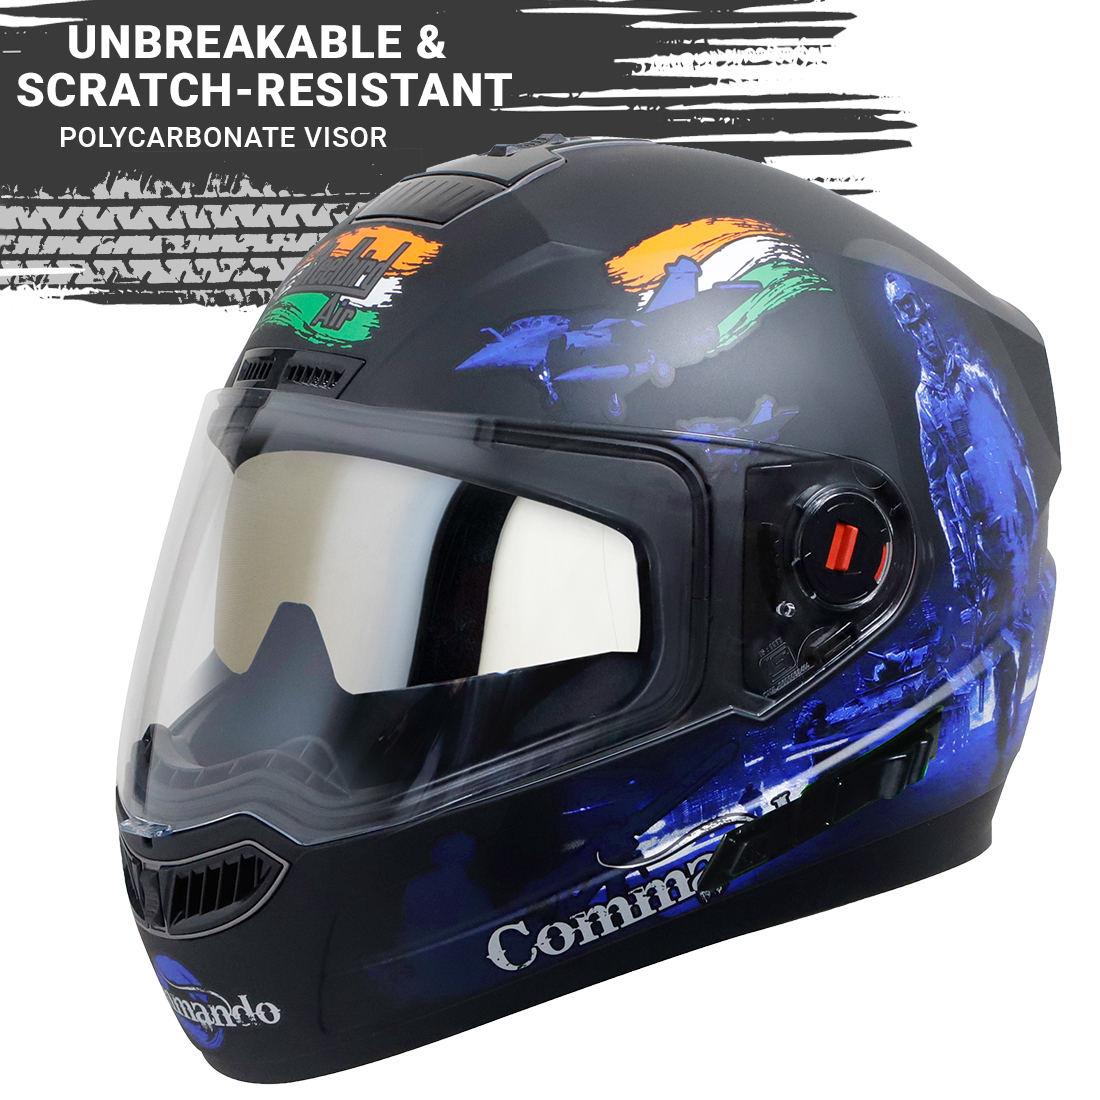 Steelbird SBA-1 Commando Double Visor Full Face Graphics Helmet, Inner Silver Sun Shield And Outer Clear Visor (Glossy Black Blue)